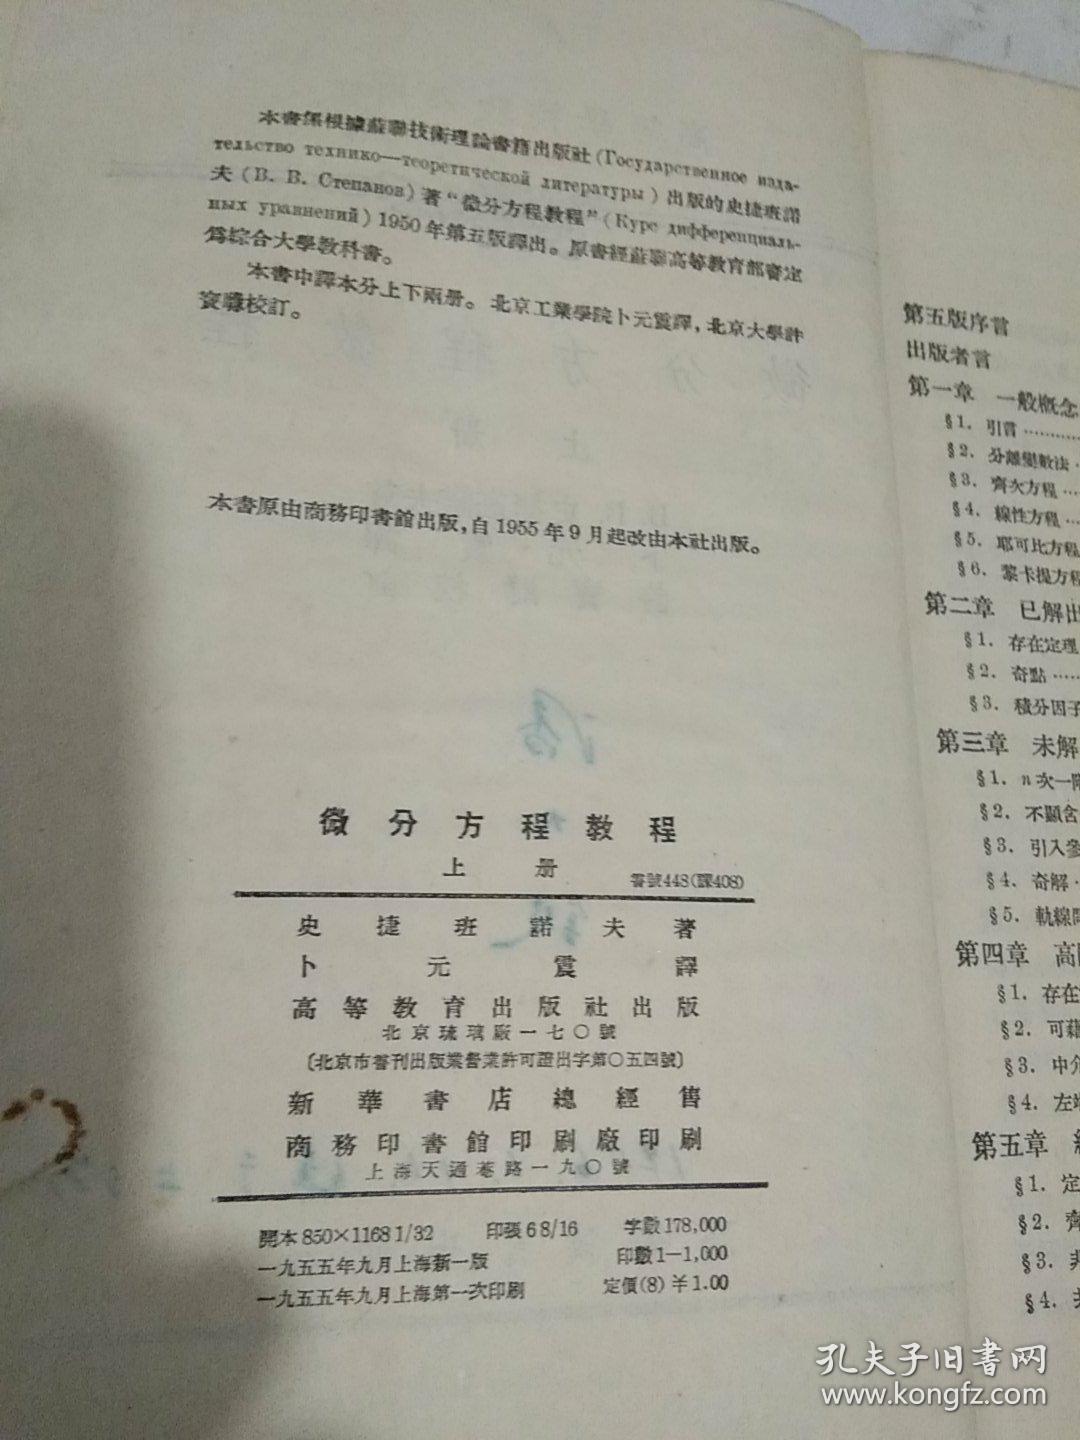 高等学校教学用书:微分方程教程  上册【55年9月上海新一版一印1.000册……使用过】